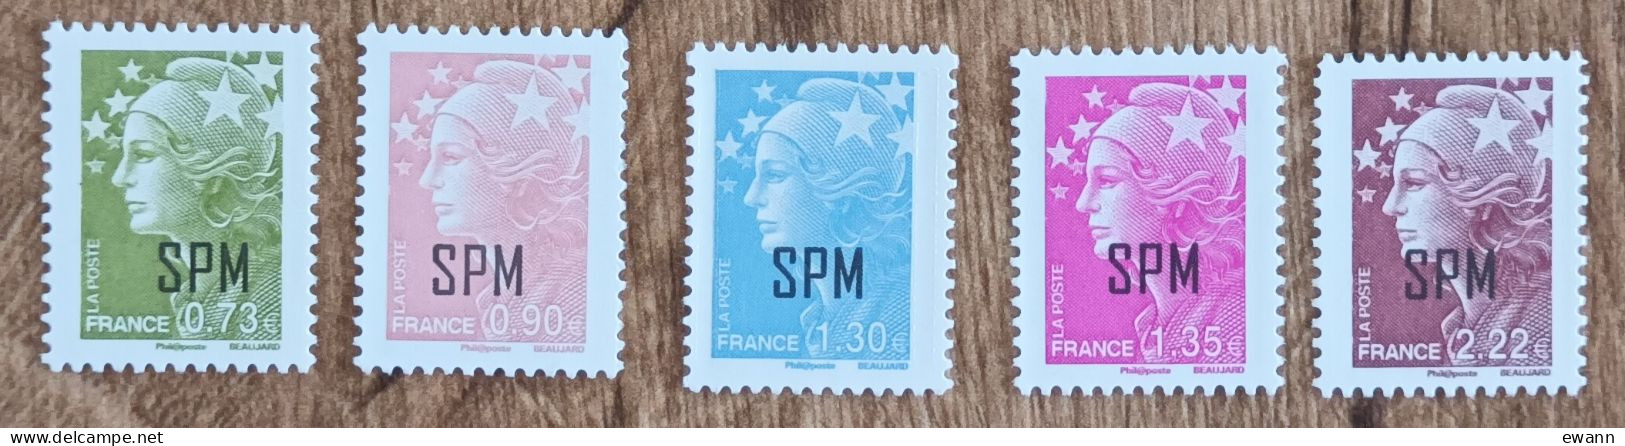 Saint Pierre Et Miquelon - YT N°967 à 971 - Marianne De Beaujard - 2010 - Neuf - Unused Stamps